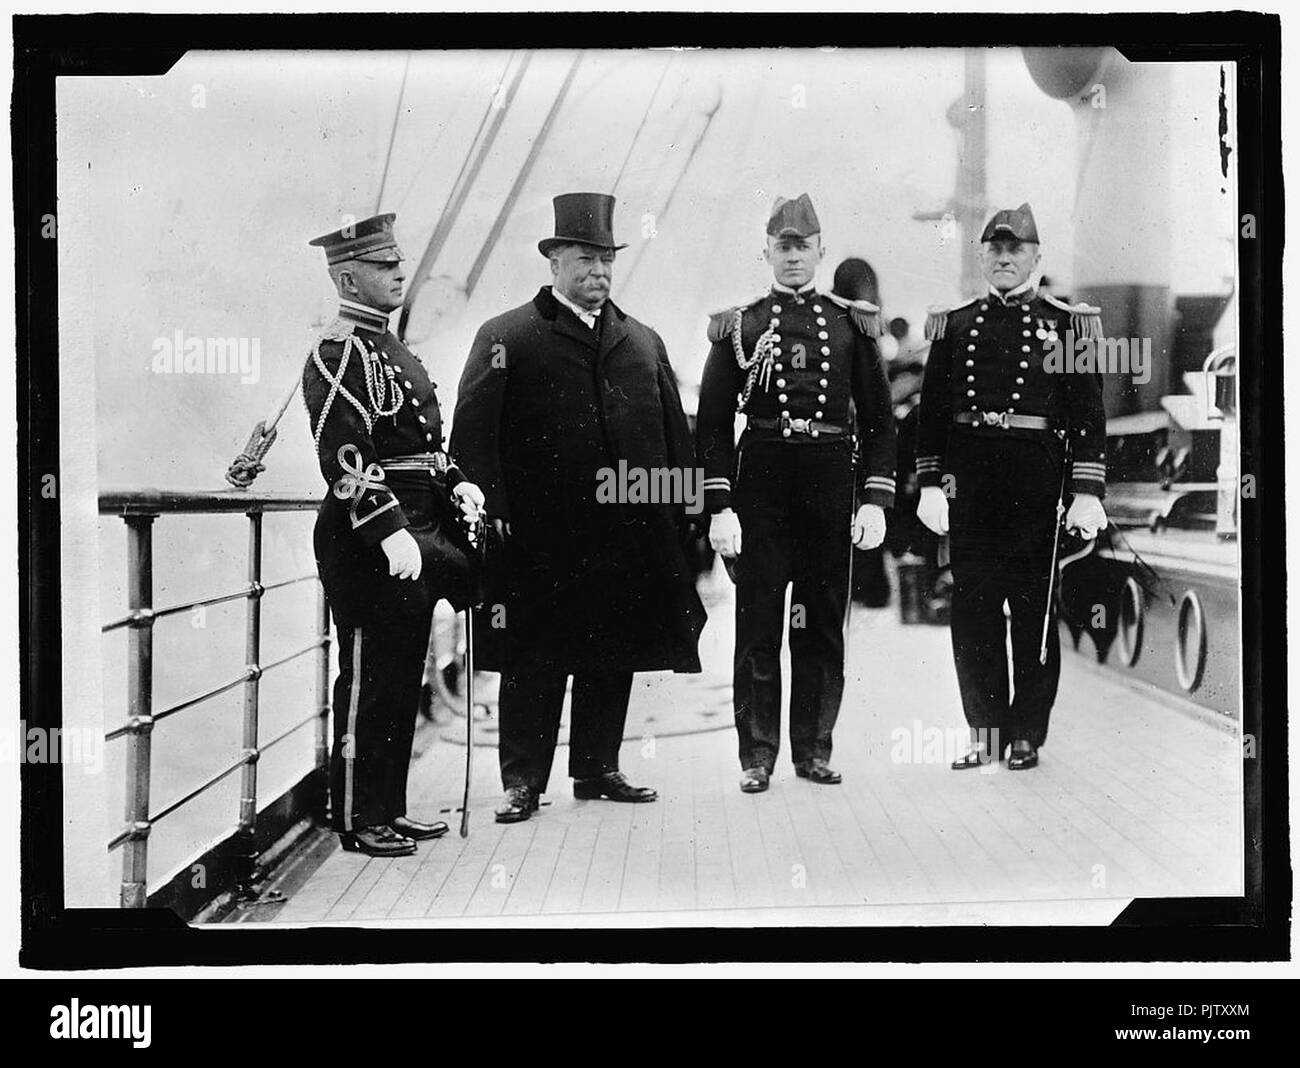 Acorazado de examen. MAJ. THOMAS L. RHOADS; Presidente Taft; LT. COMDR. JOHN W. TIMMONDS; COMDR. GORMLEY Foto de stock